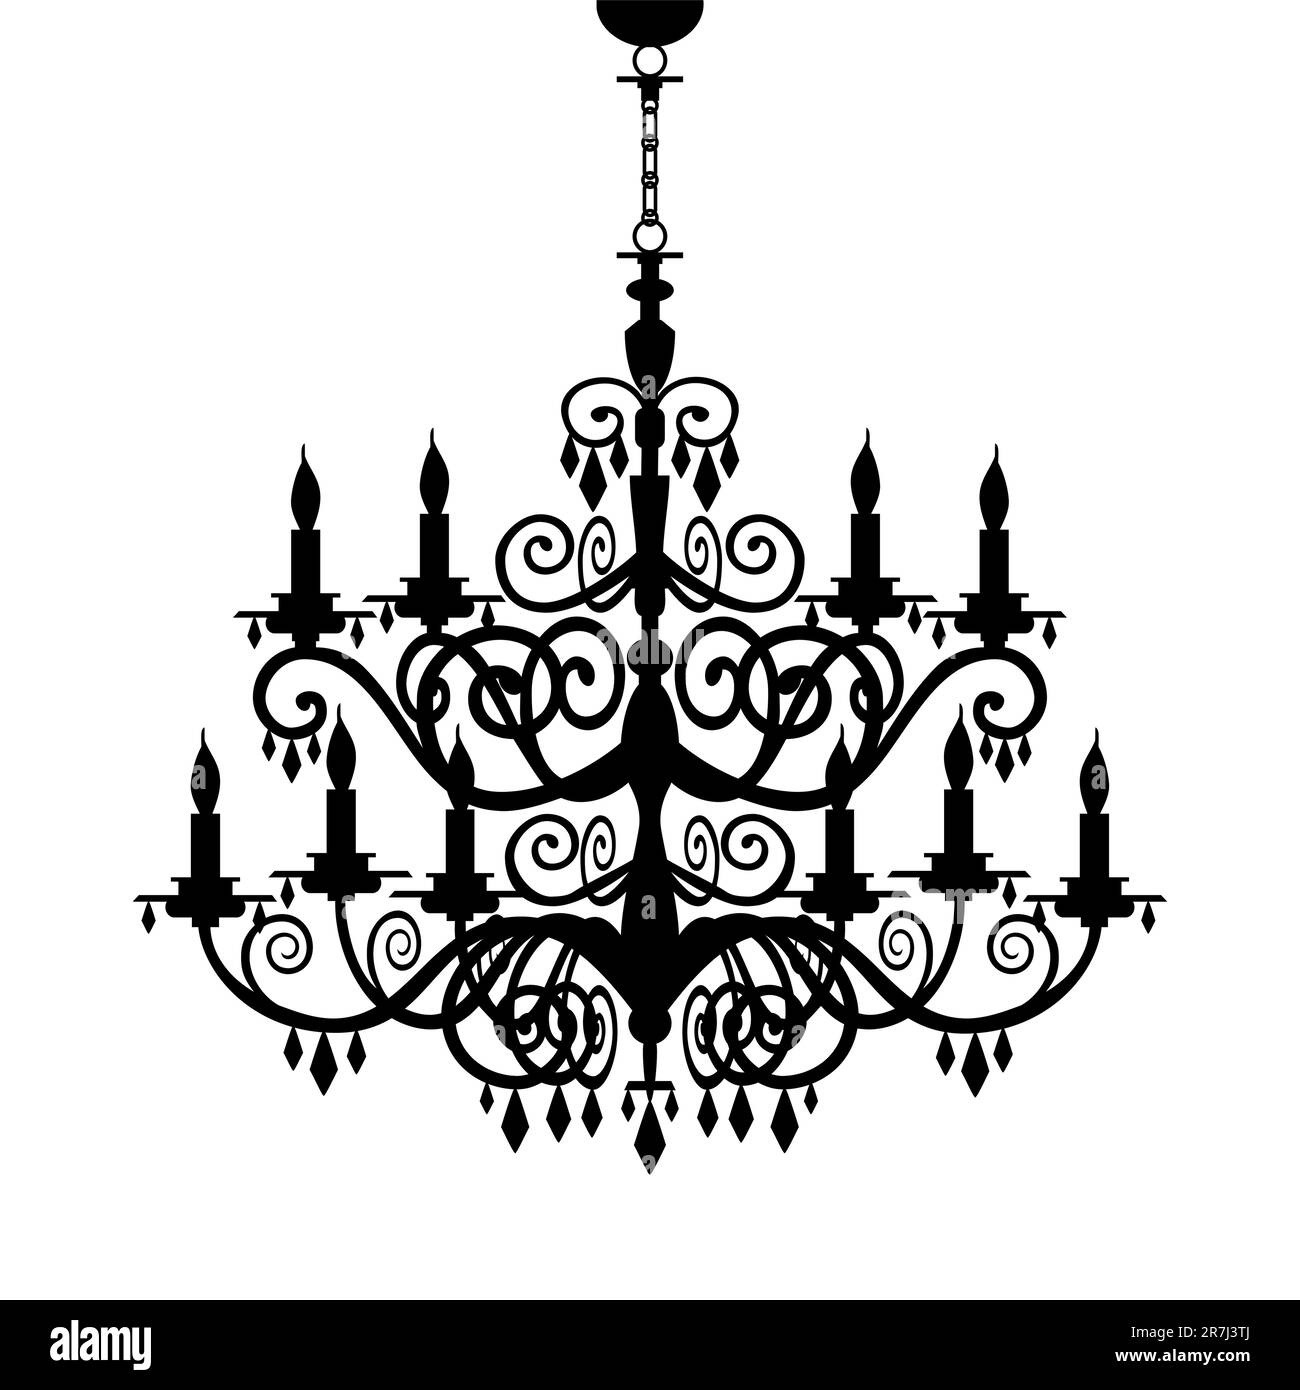 Lampadario decorativo barocco con silhouette isolata su bianco, grafica vettoriale completamente scalabile incluso EPS v8 e 300 dpi JPG. Illustrazione Vettoriale